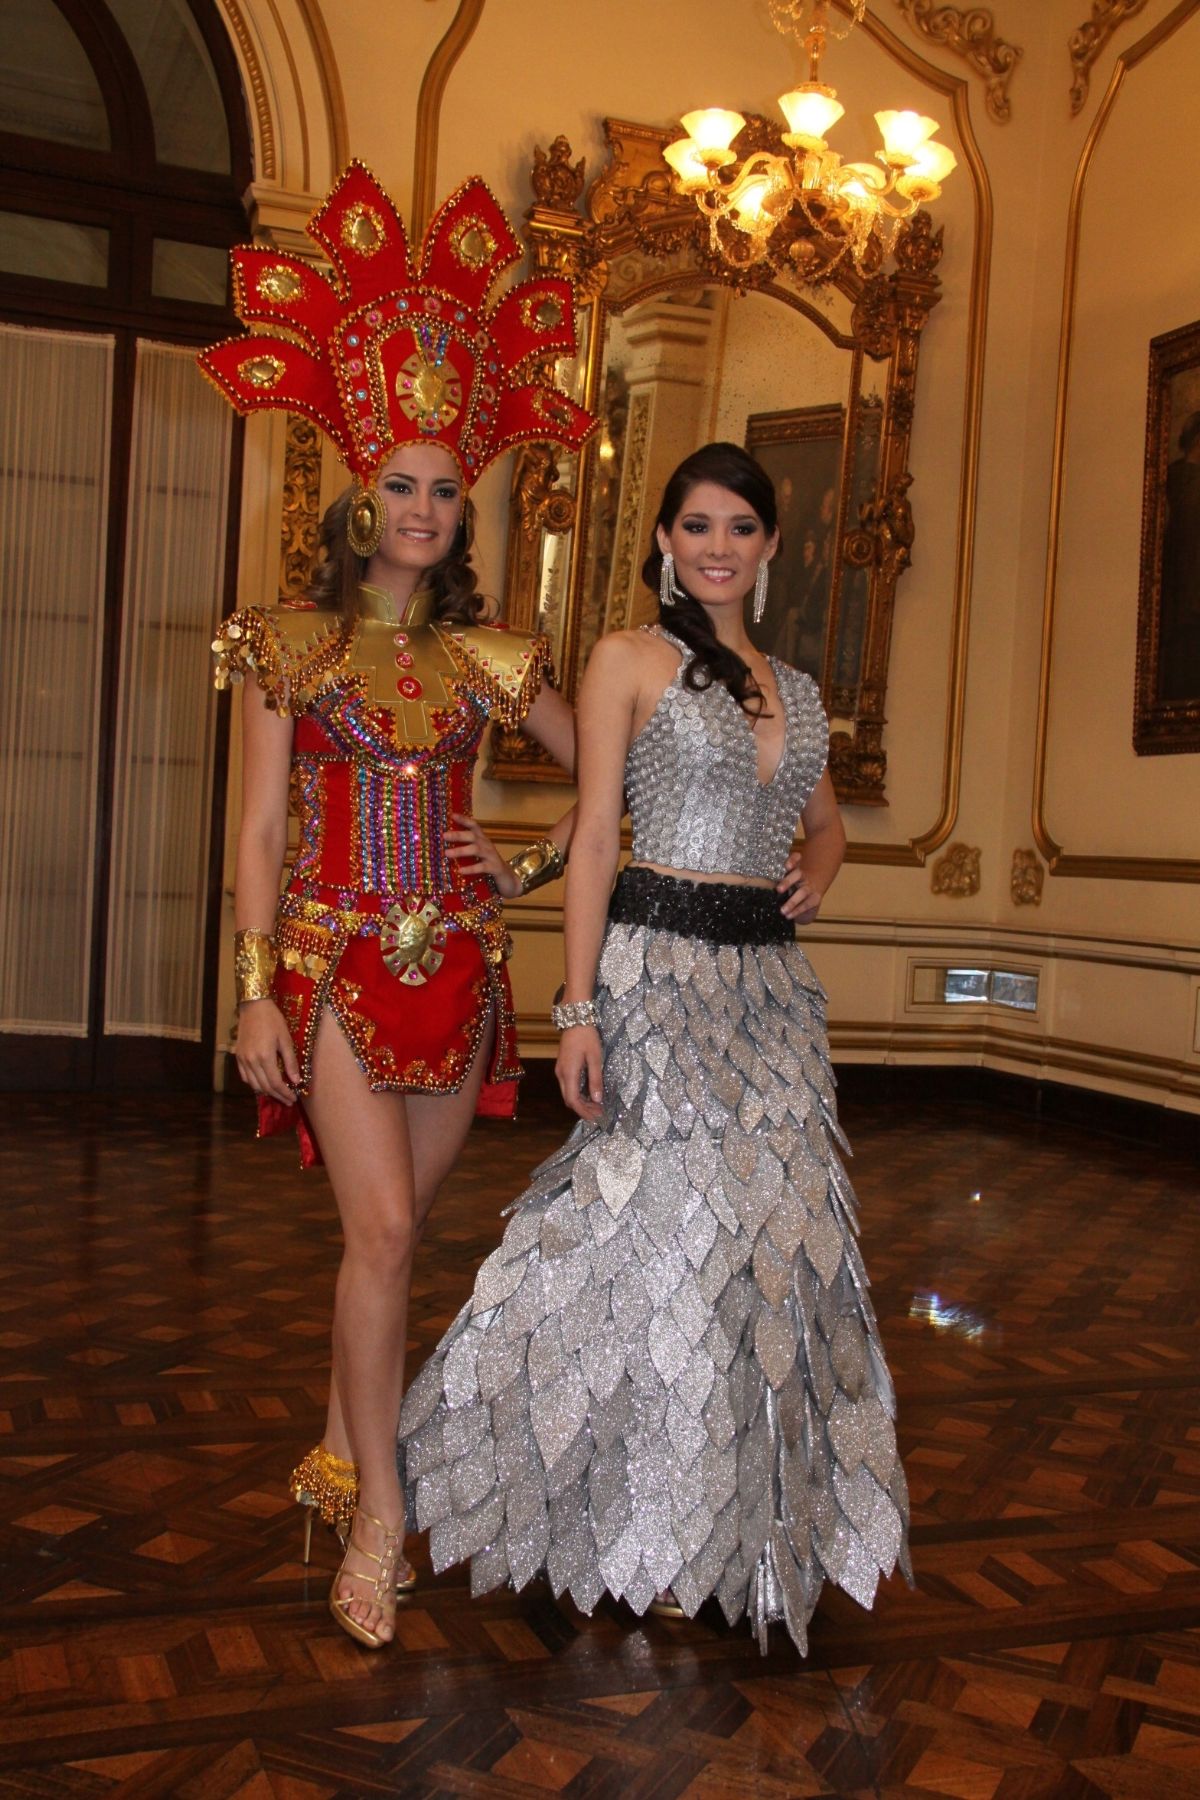 Contracción Regularmente Están familiarizados Bellezas peruanas lucirán traje de princesa inca y otro reciclado en China  y Vietnam | Noticias | Agencia Peruana de Noticias Andina